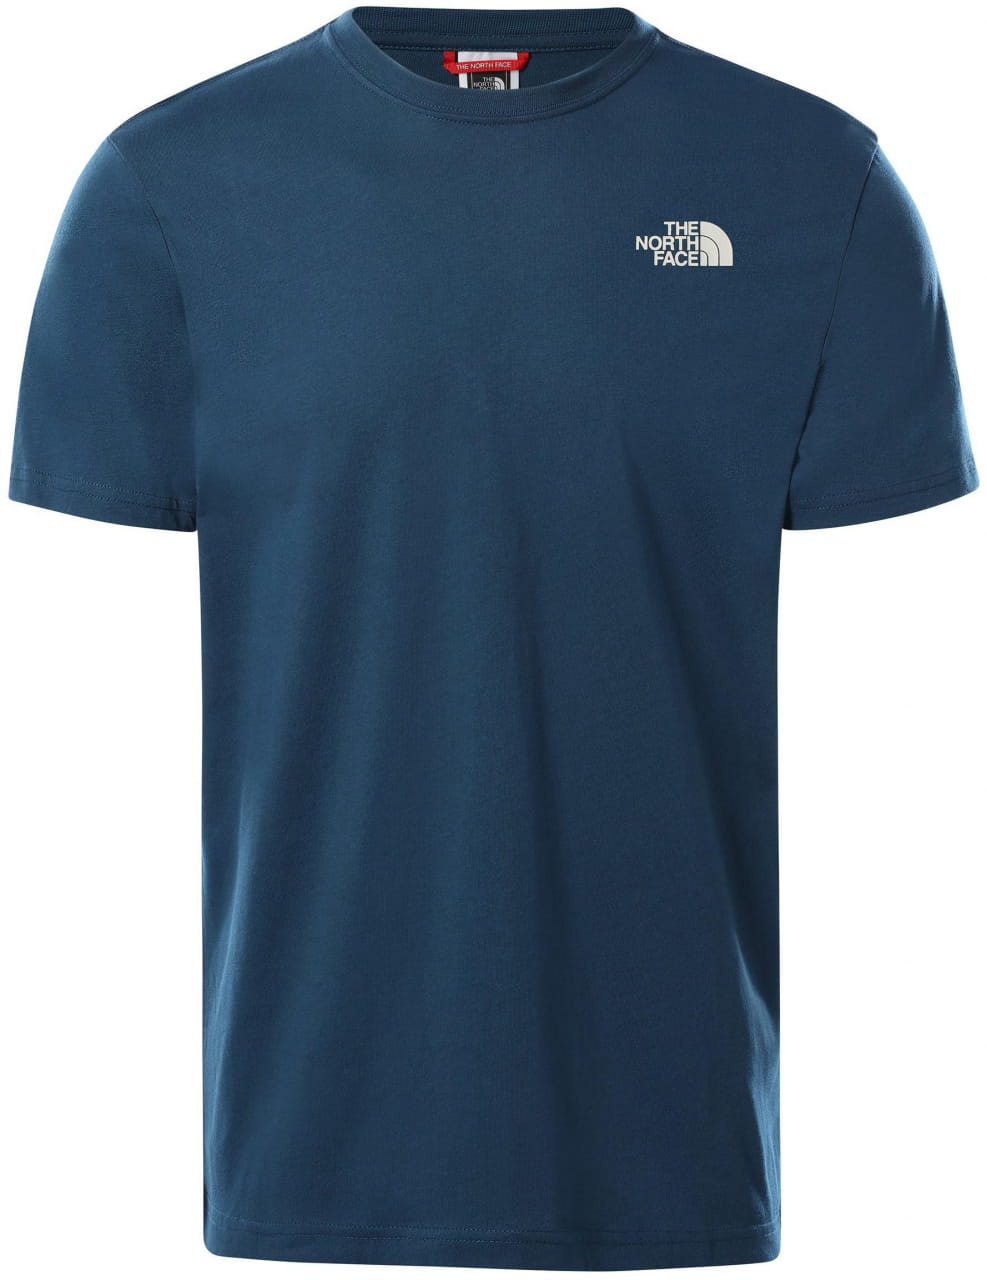 Pánské tričko s krátkými rukávy The North Face Men’s S/S REDBOX CELEBRATION TEE